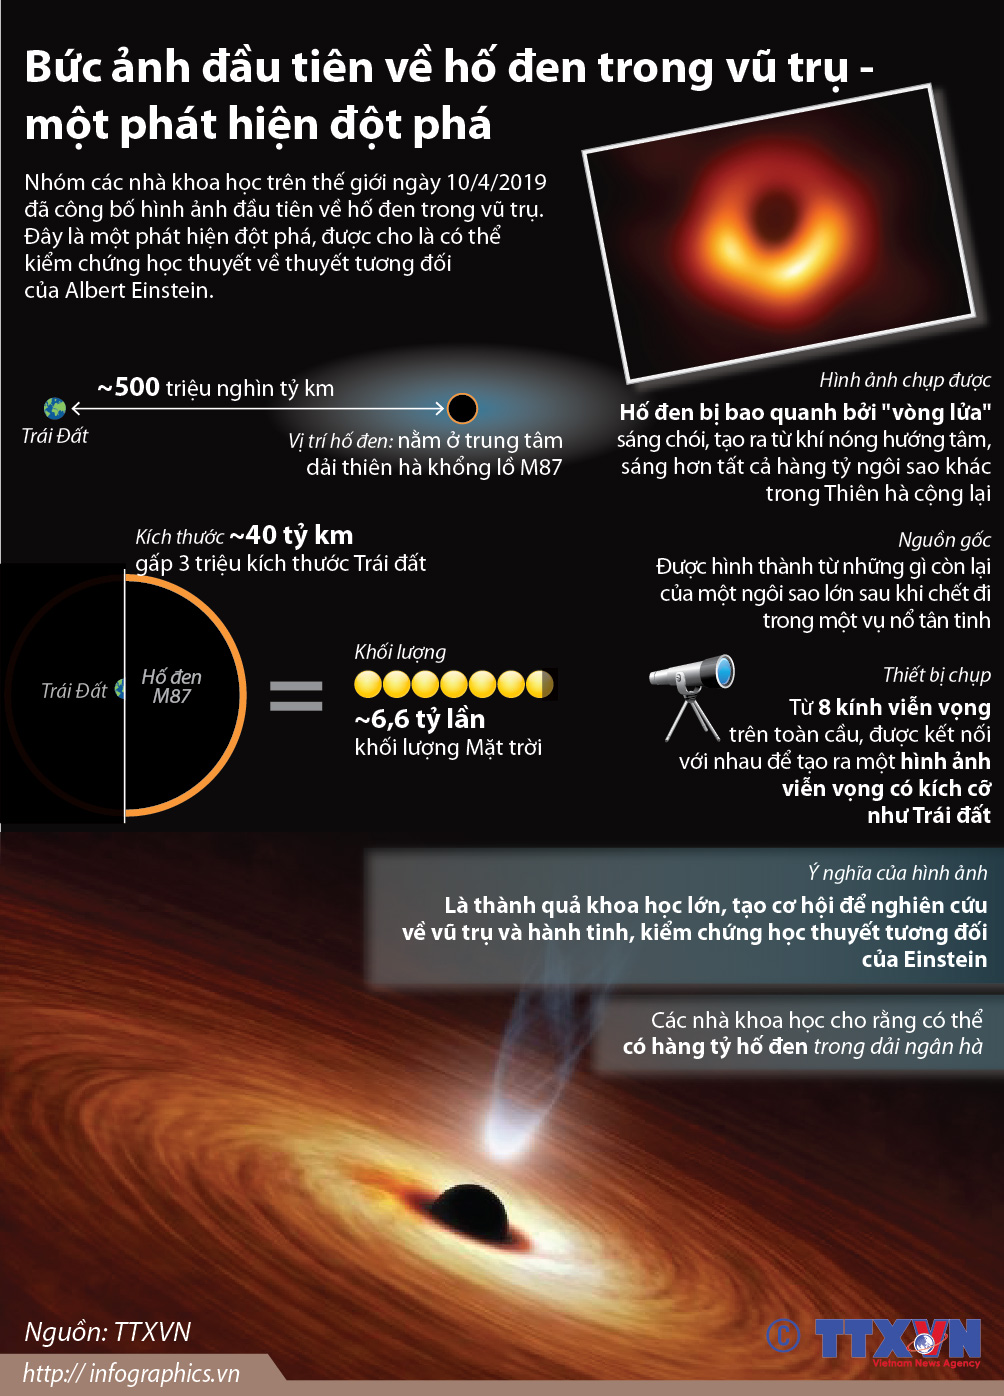 Hố đen: Được coi là một trong những hiện tượng kỳ quặc nhất và khó hiểu nhất của vũ trụ, hố đen thu hút sự tò mò của con người. Xem những hình ảnh về hố đen, bạn sẽ hiểu hơn về sức mạnh kinh hoàng của chúng và cảm nhận được sự nghiệt ngã và thú vị của vũ trụ.